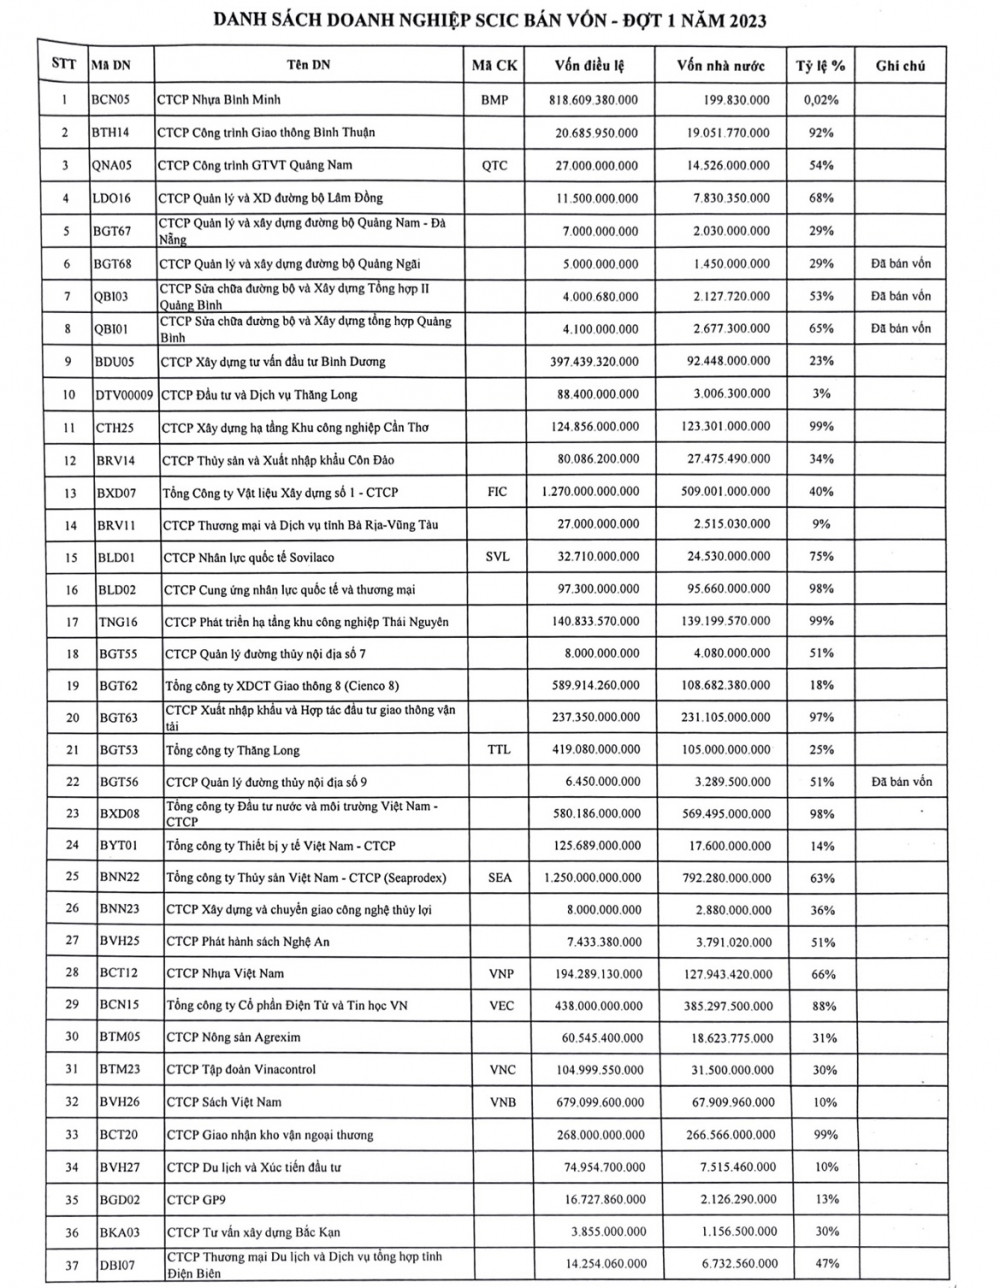 Danh sách thoái vốn năm 2023 của SCIC: “Vua nhựa” BMP và 4 doanh nghiệp nhiệt điện góp mặt